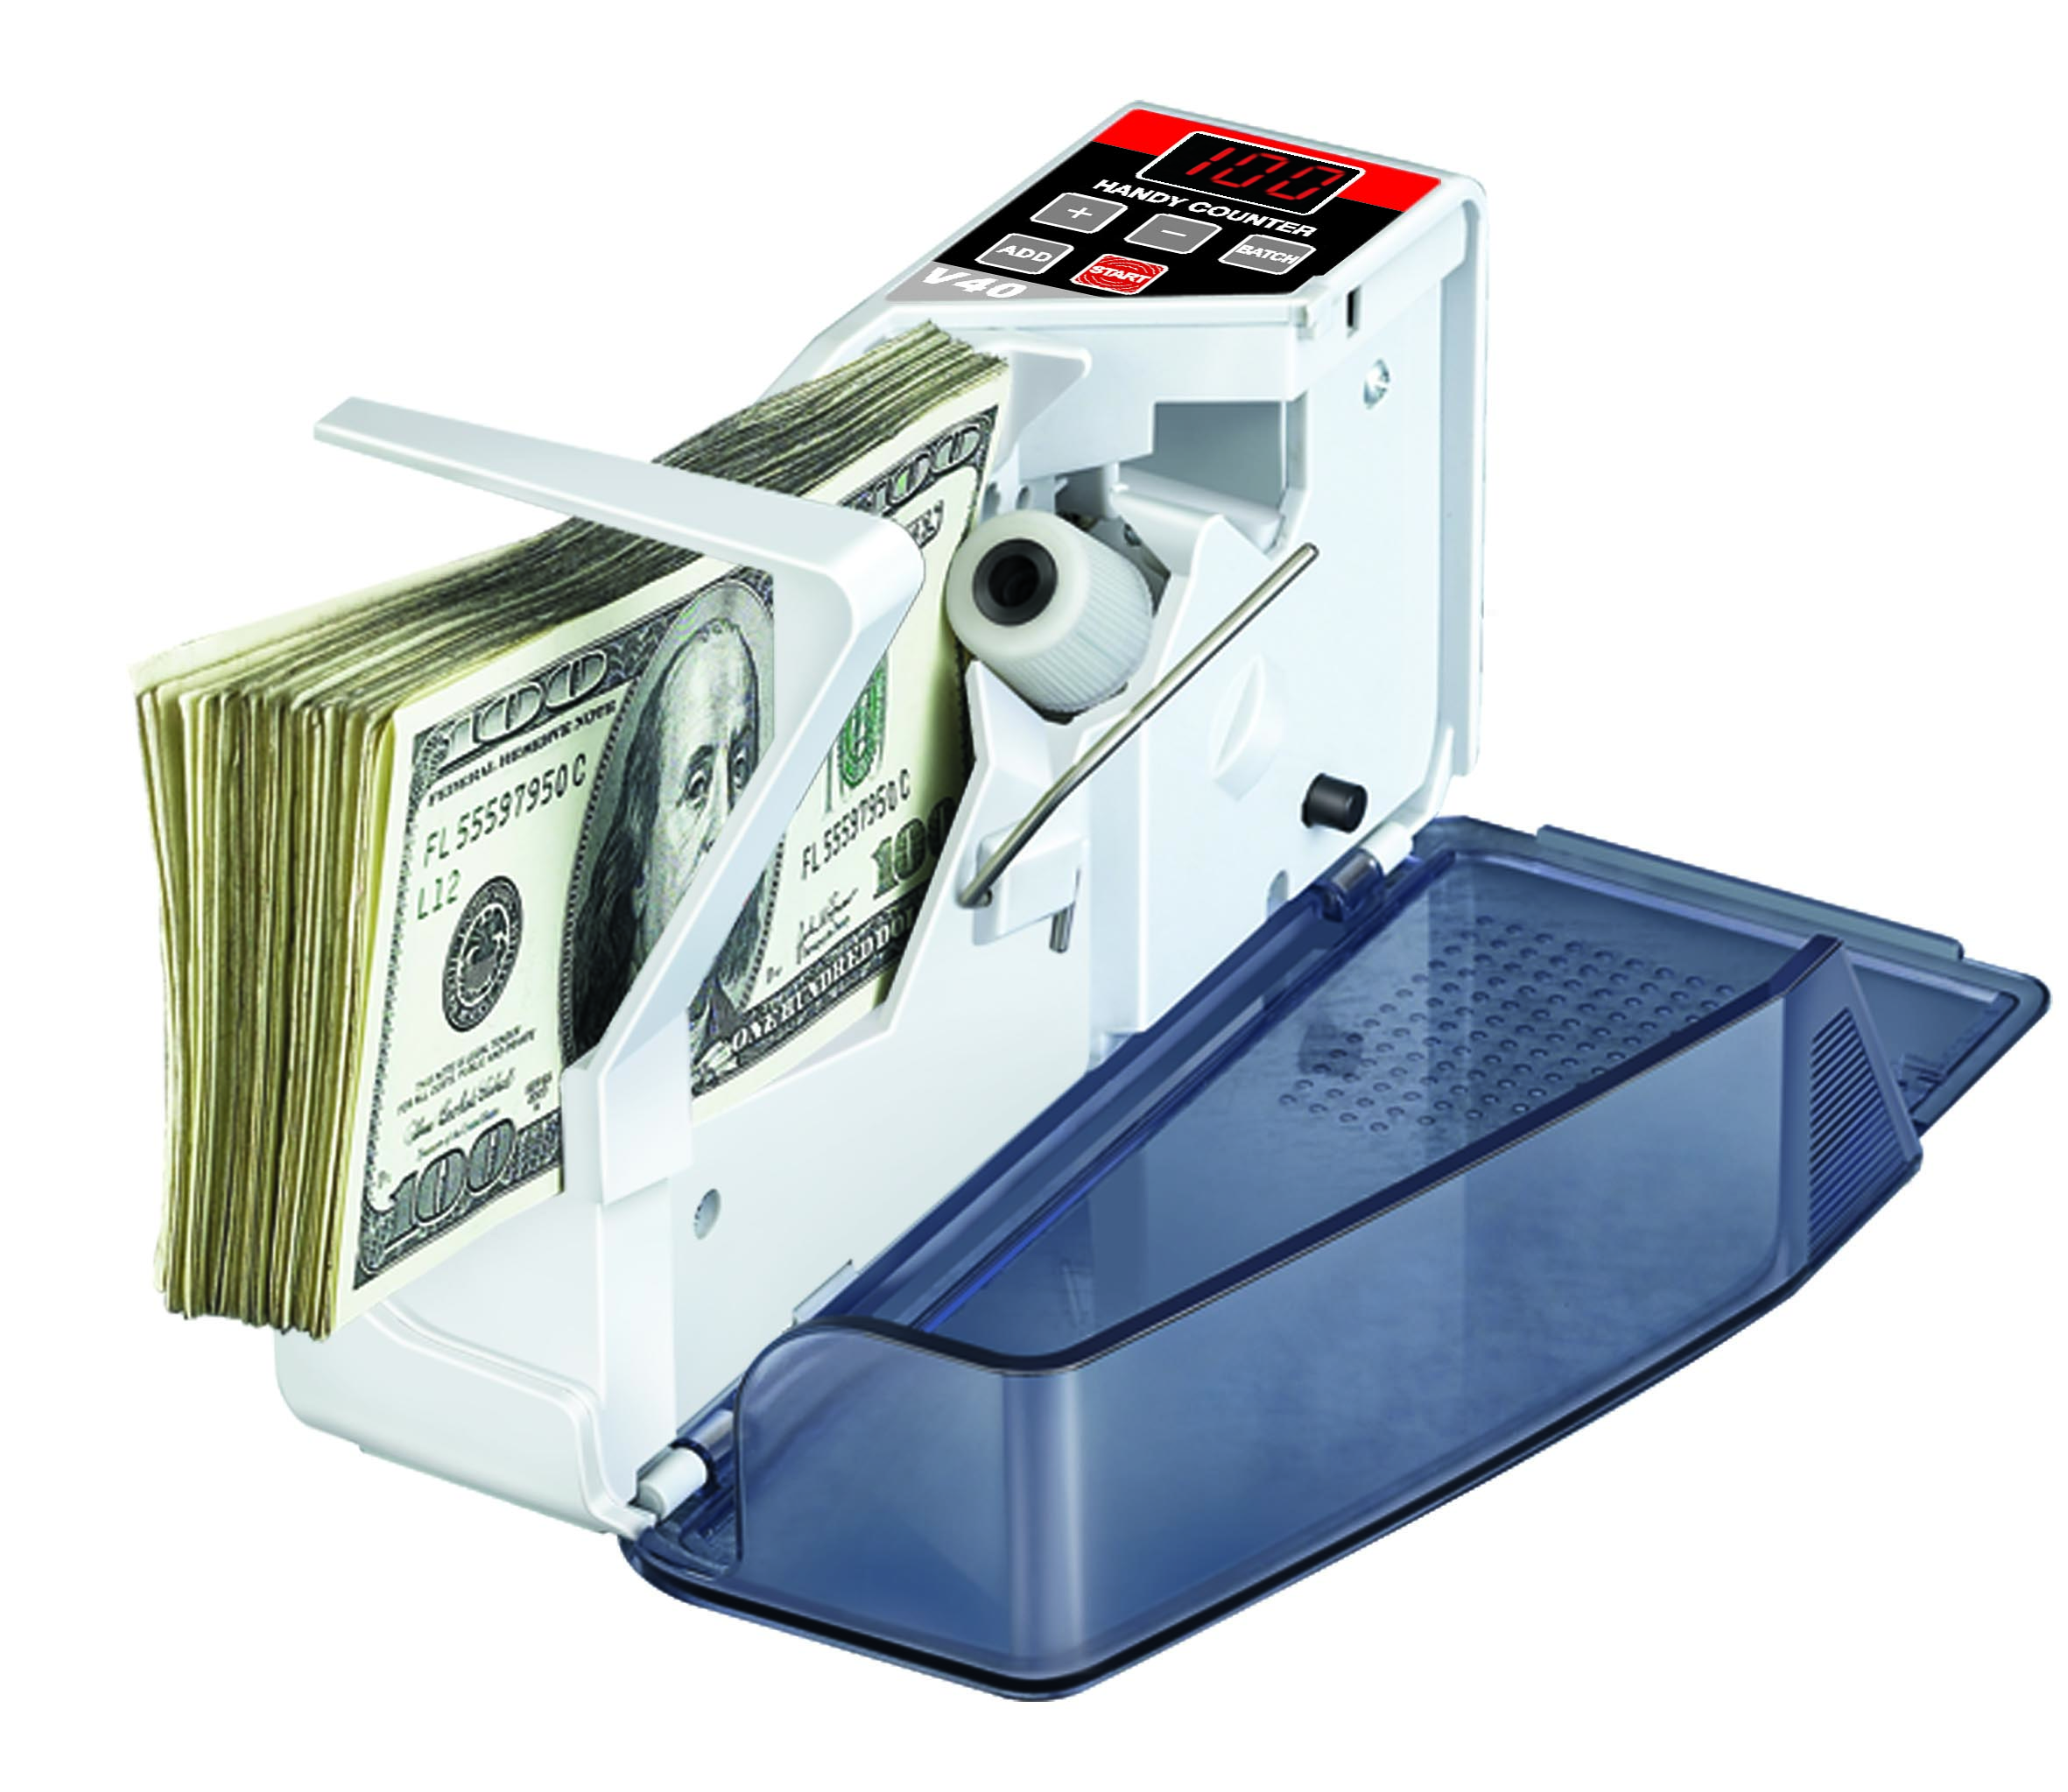 Handy Mix Currency Handheld Counter V40 Contador de efectivo Máquina de dinero de conteo rápido